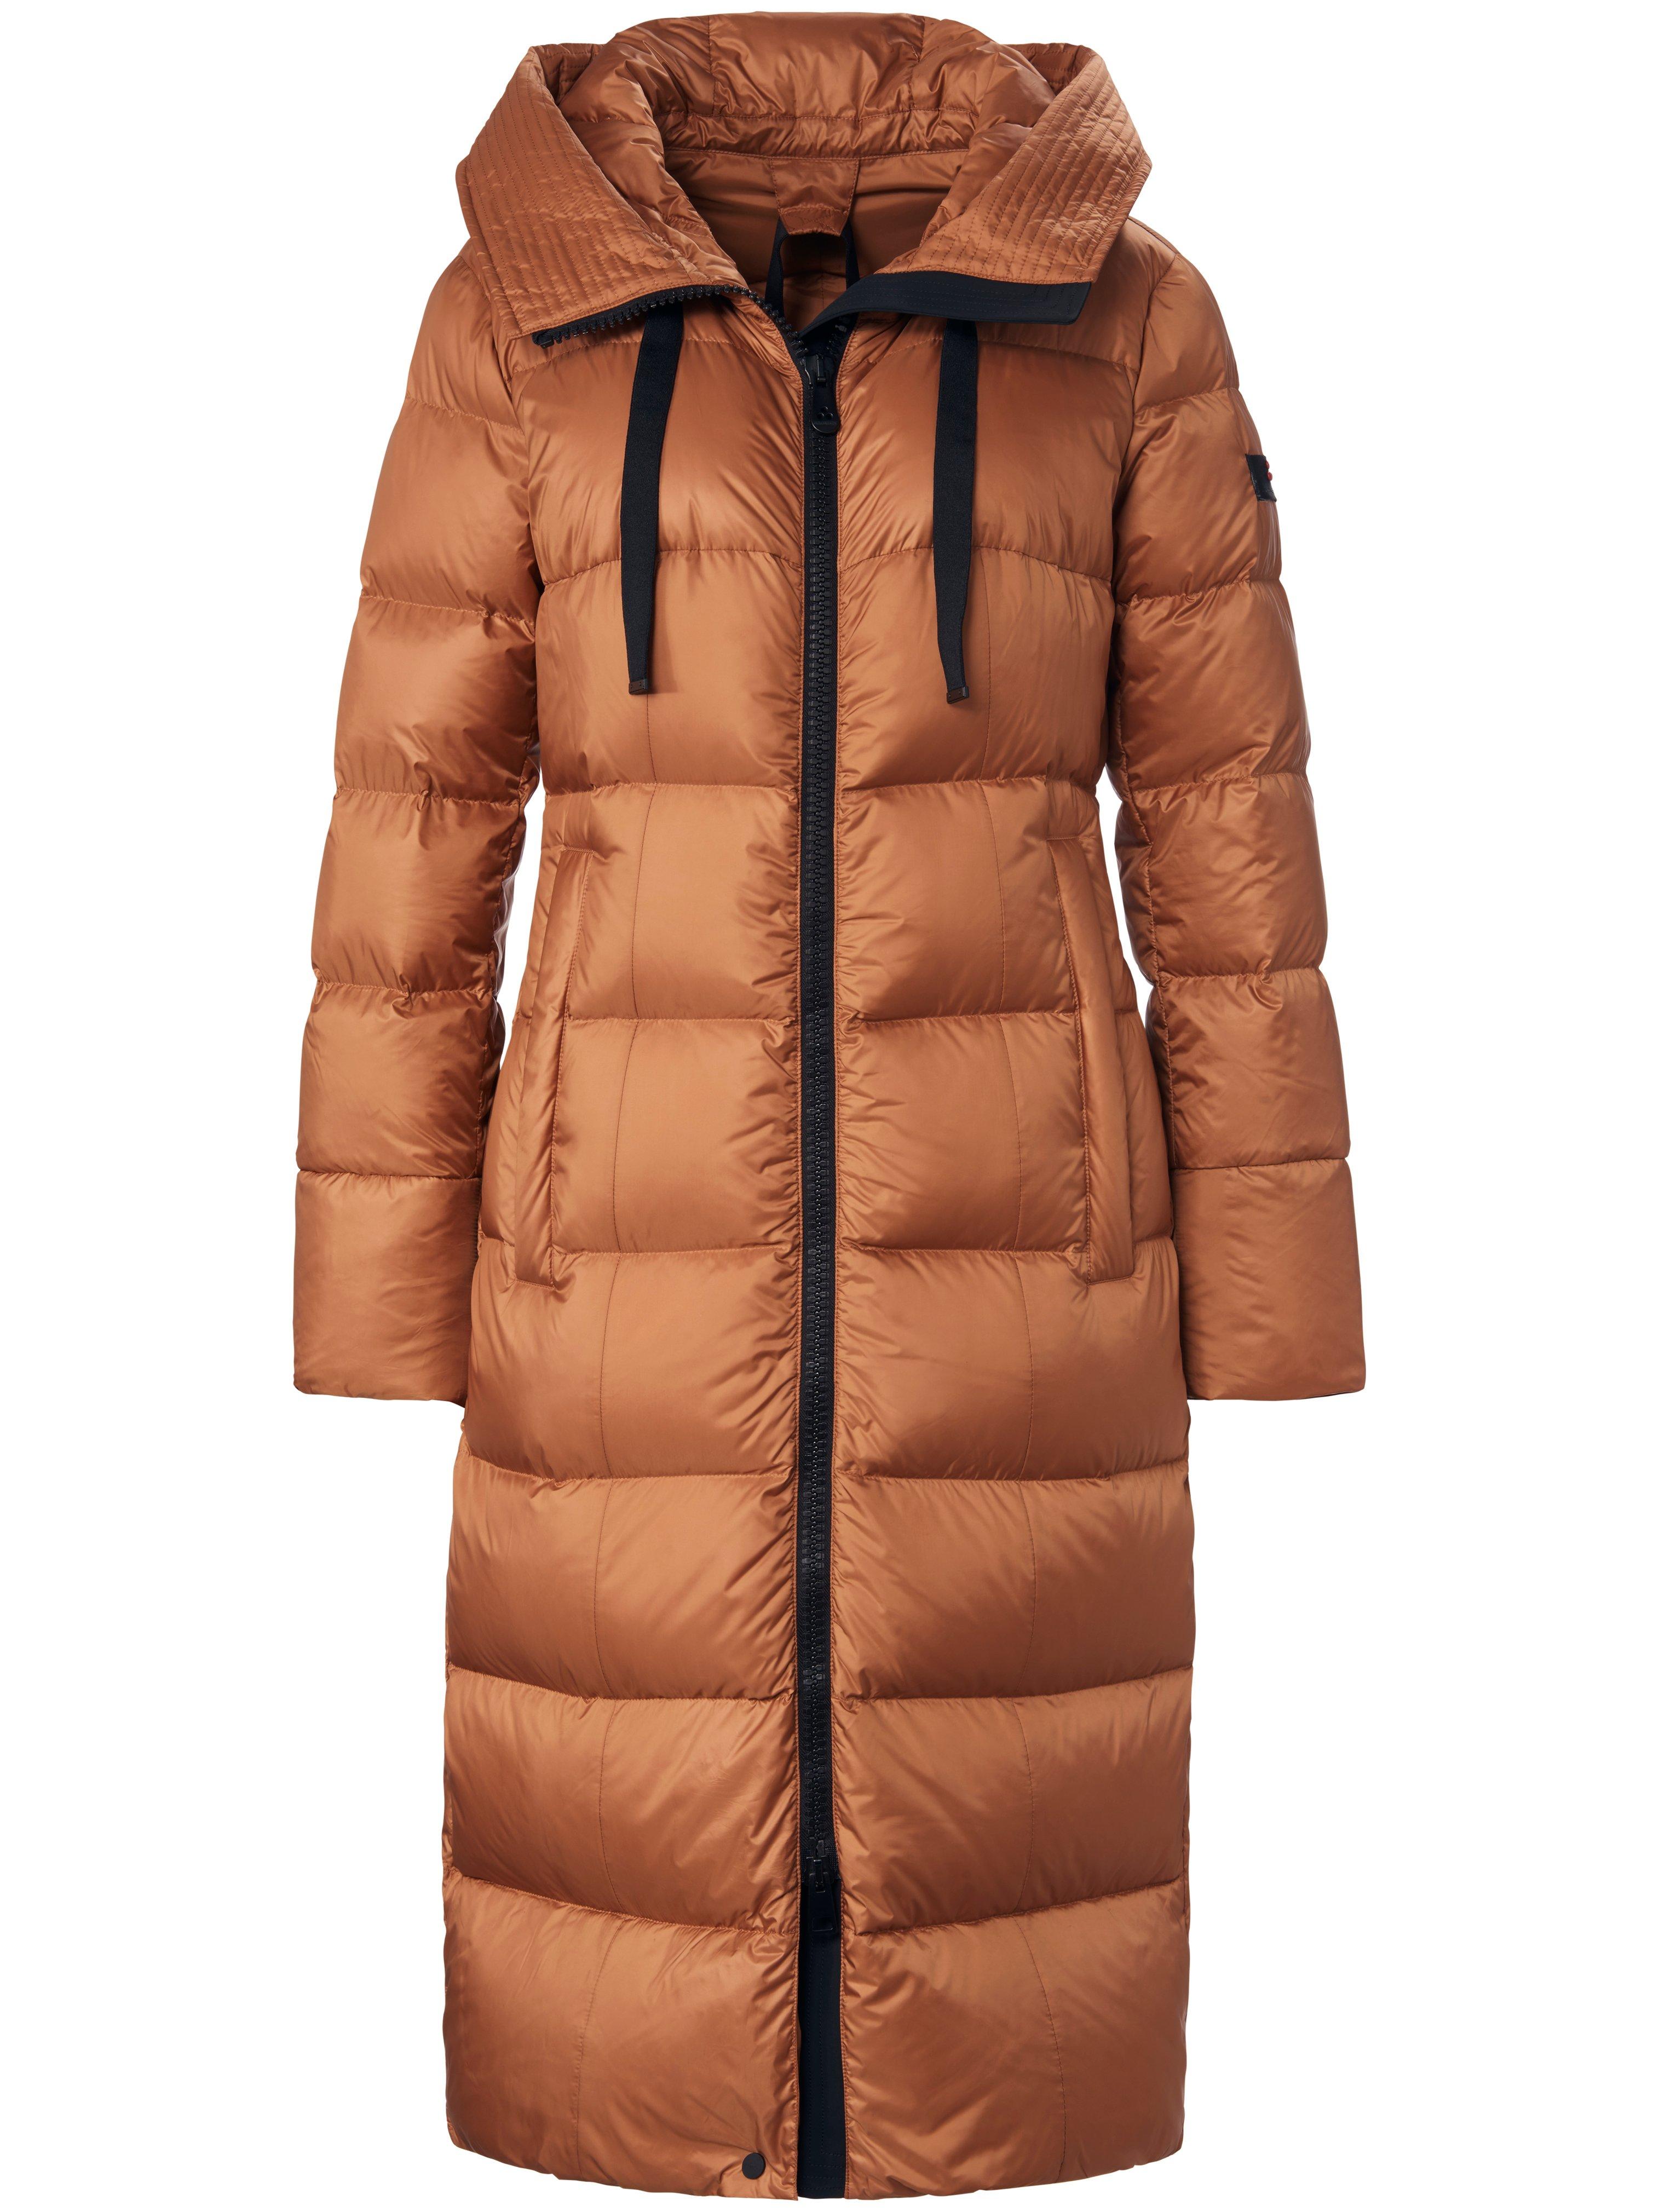 Le manteau doudoune avec capuche  Peuterey marron